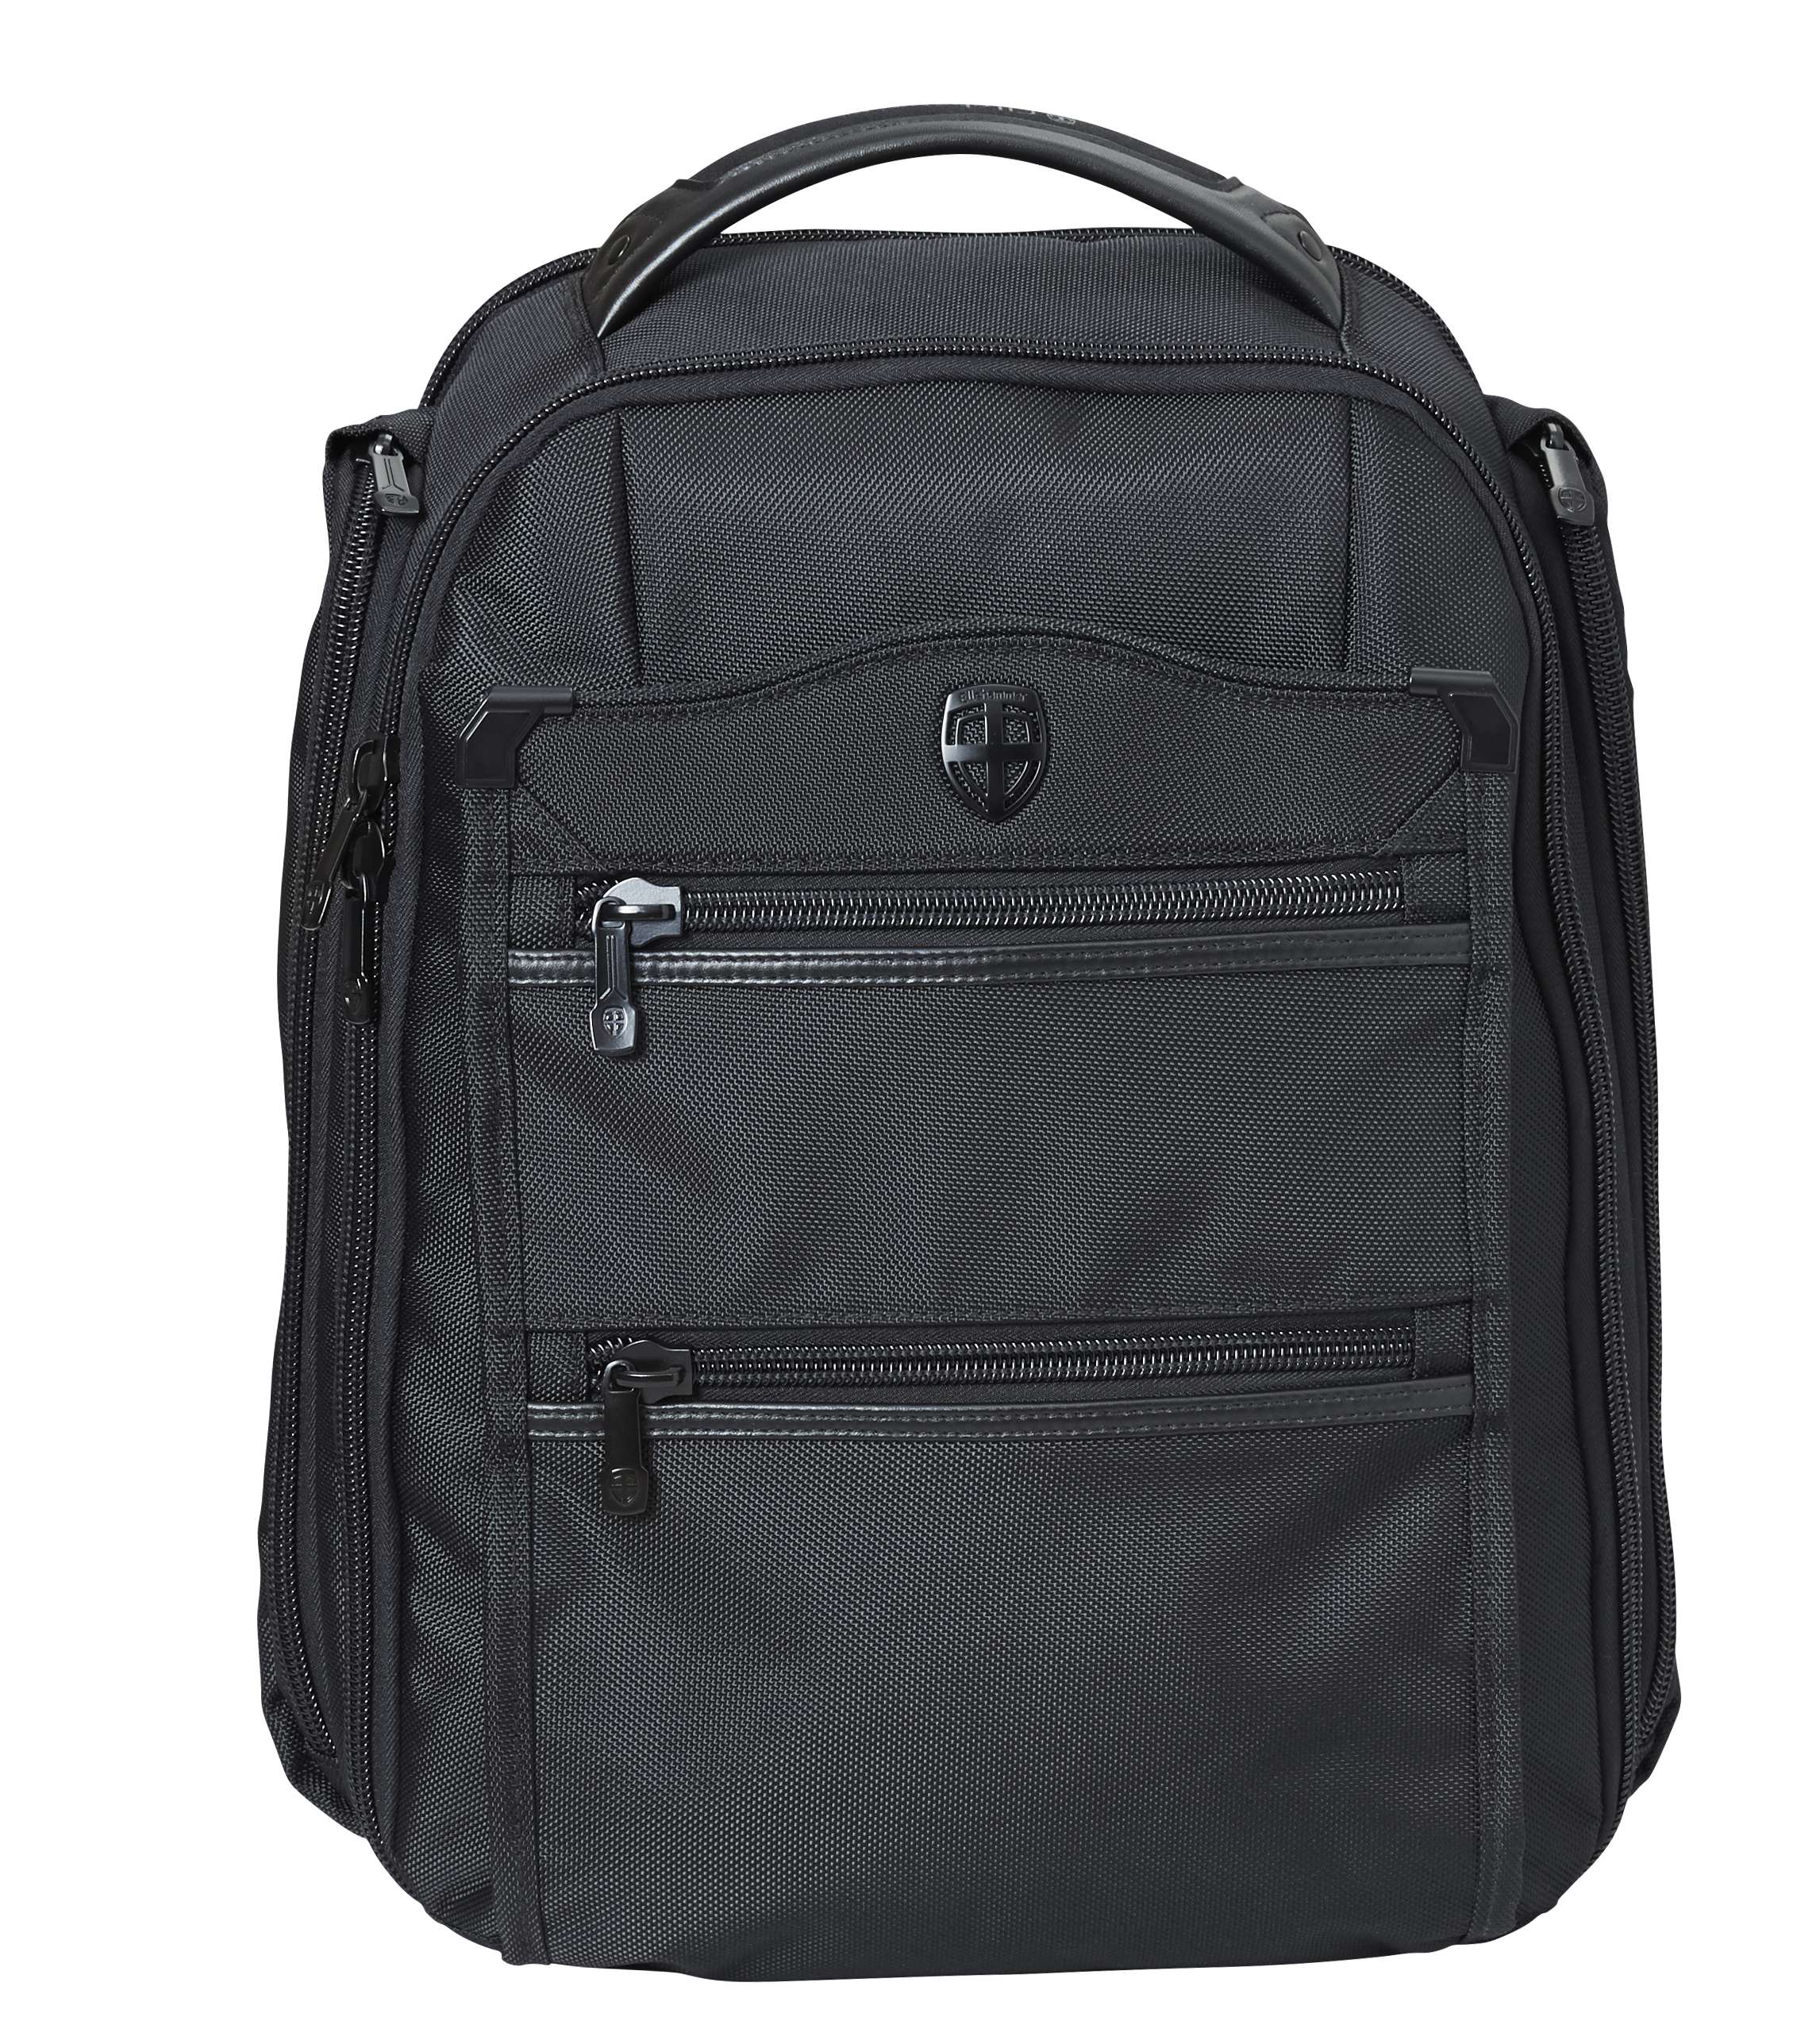 Ellehammer - BiB OSL Backpack - Black (59021-01)